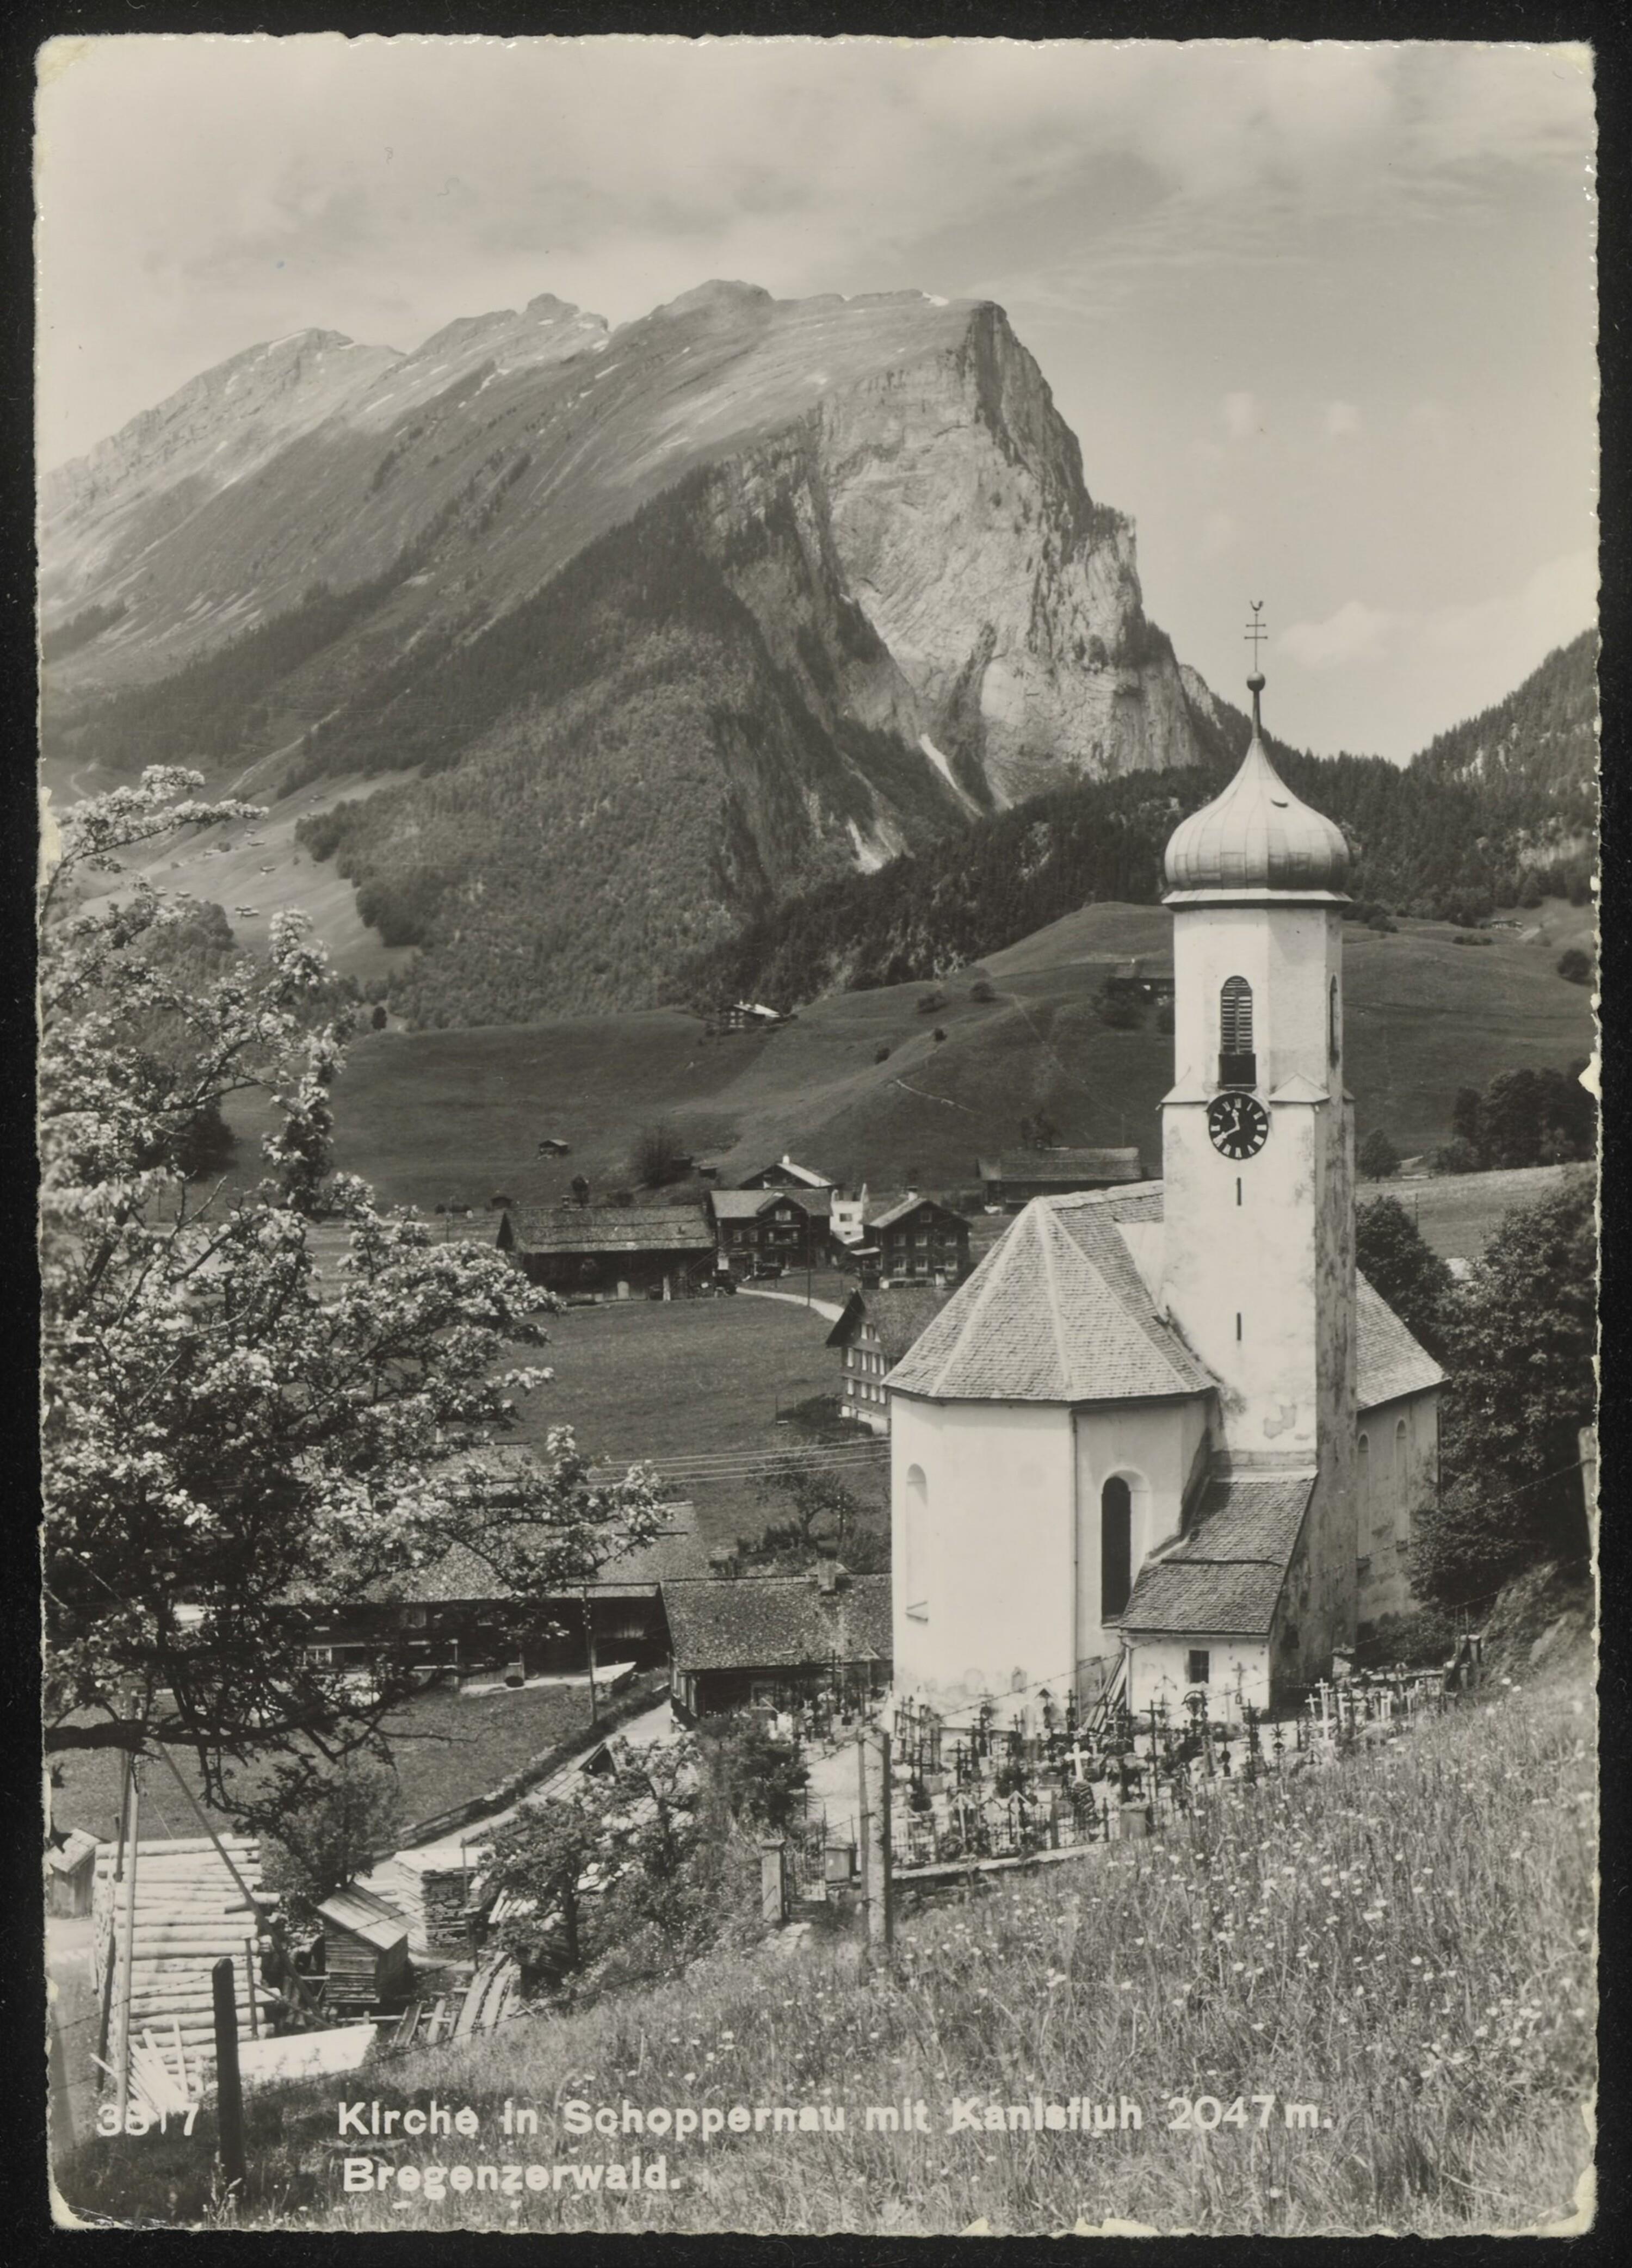 Kirche in Schoppernau mit Kanisfluh 2047 m. Bregenzerwald></div>


    <hr>
    <div class=